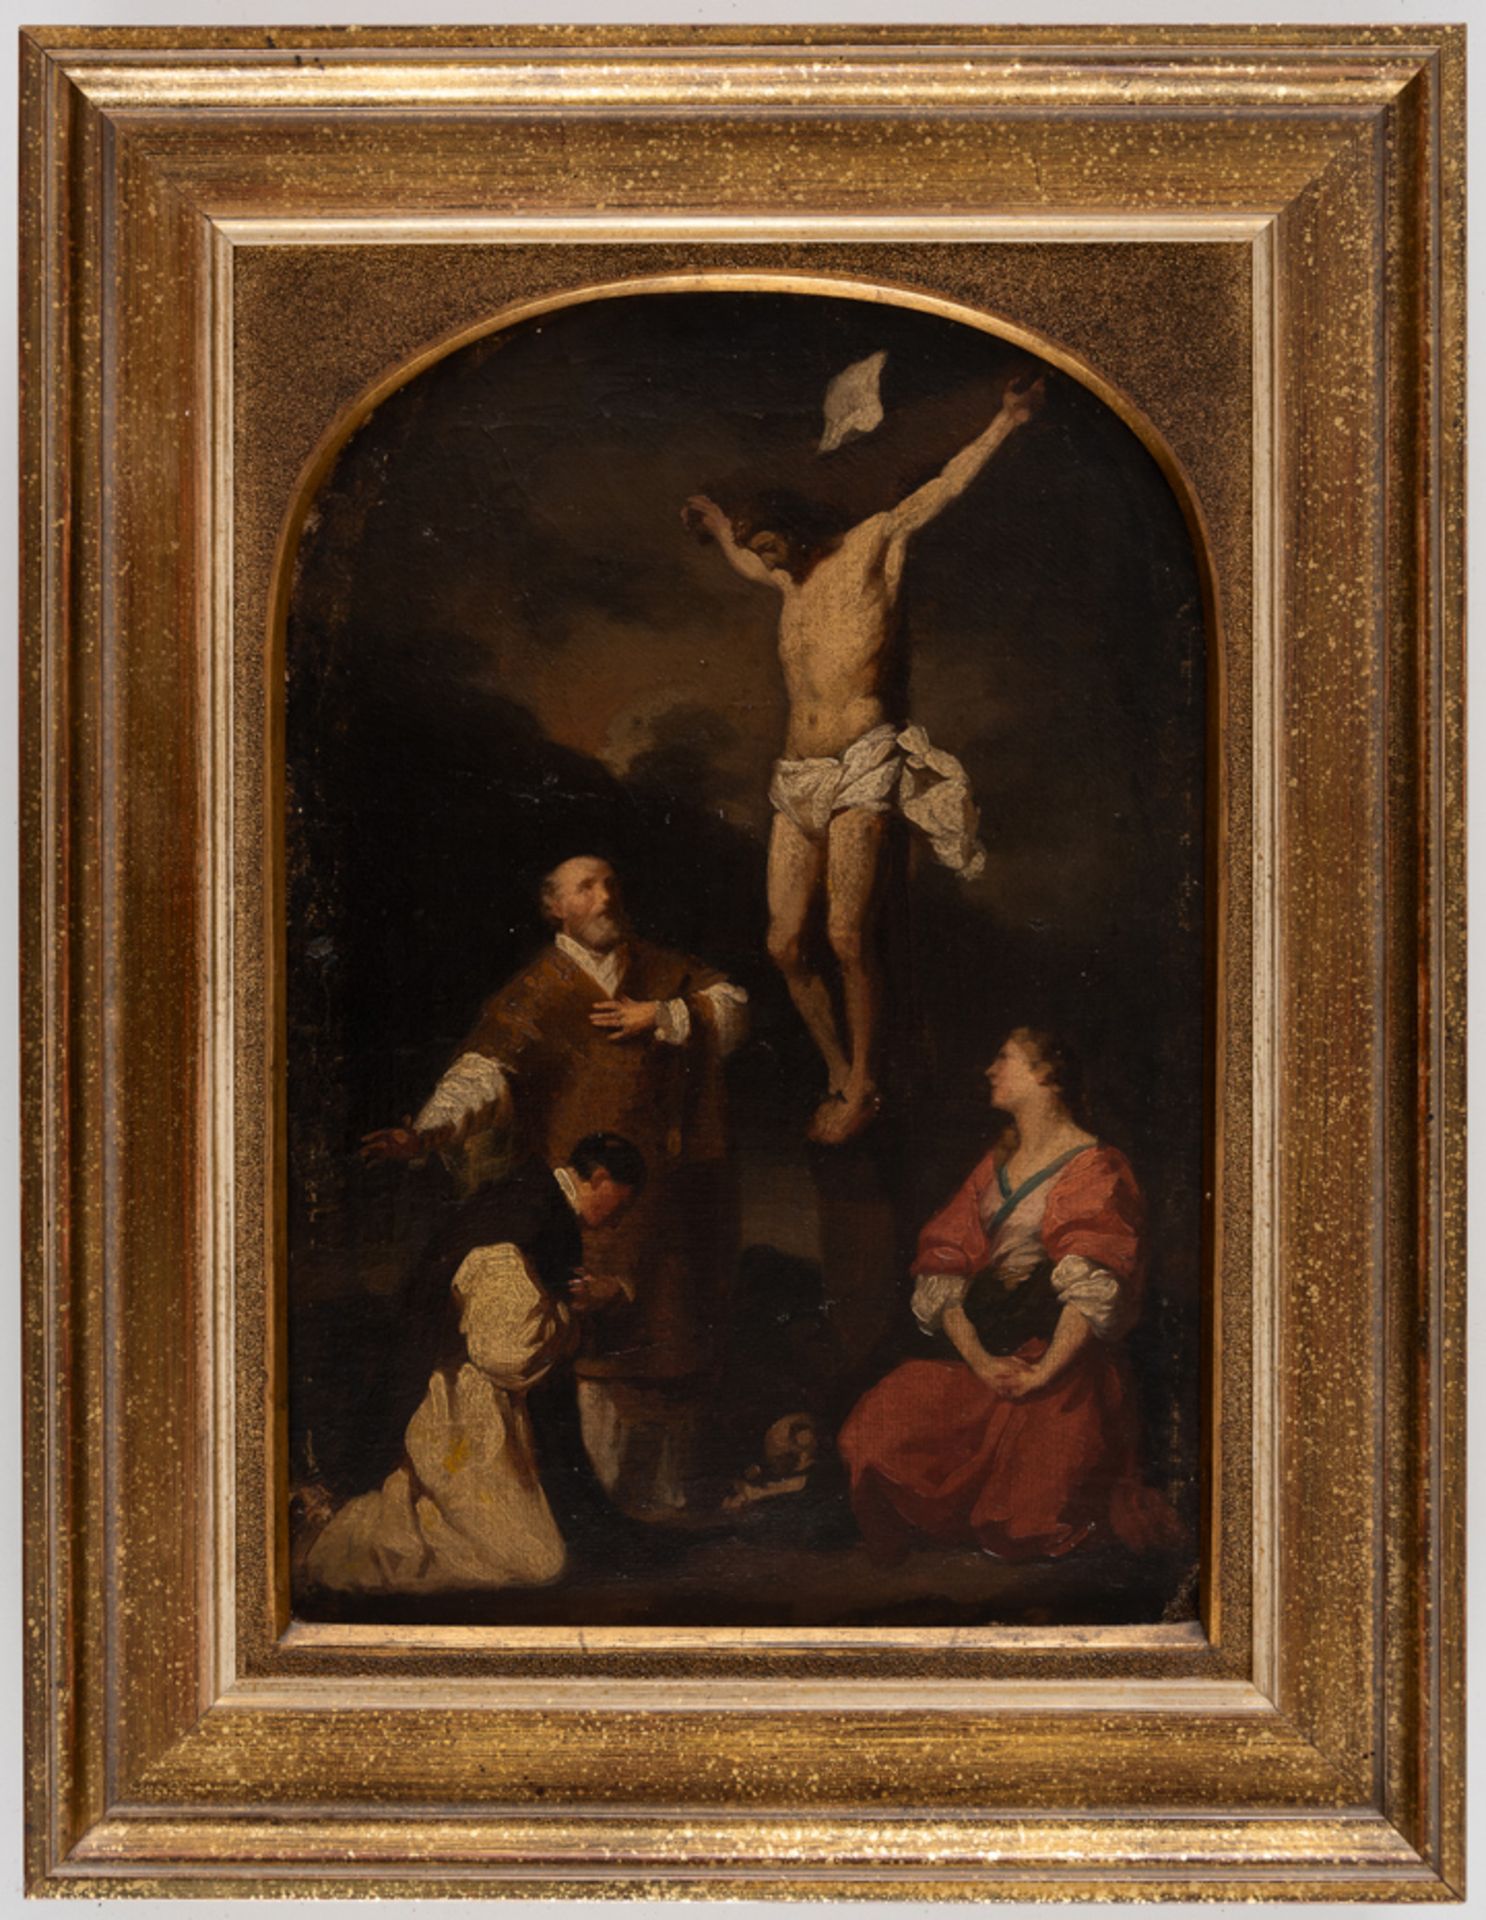 CHRISTUS GEKREUZIGT MIT DEN HEILIGEN EUSEBIUS, PHILIPP NERI UND MARIA MAGDALENA - Bild 2 aus 3